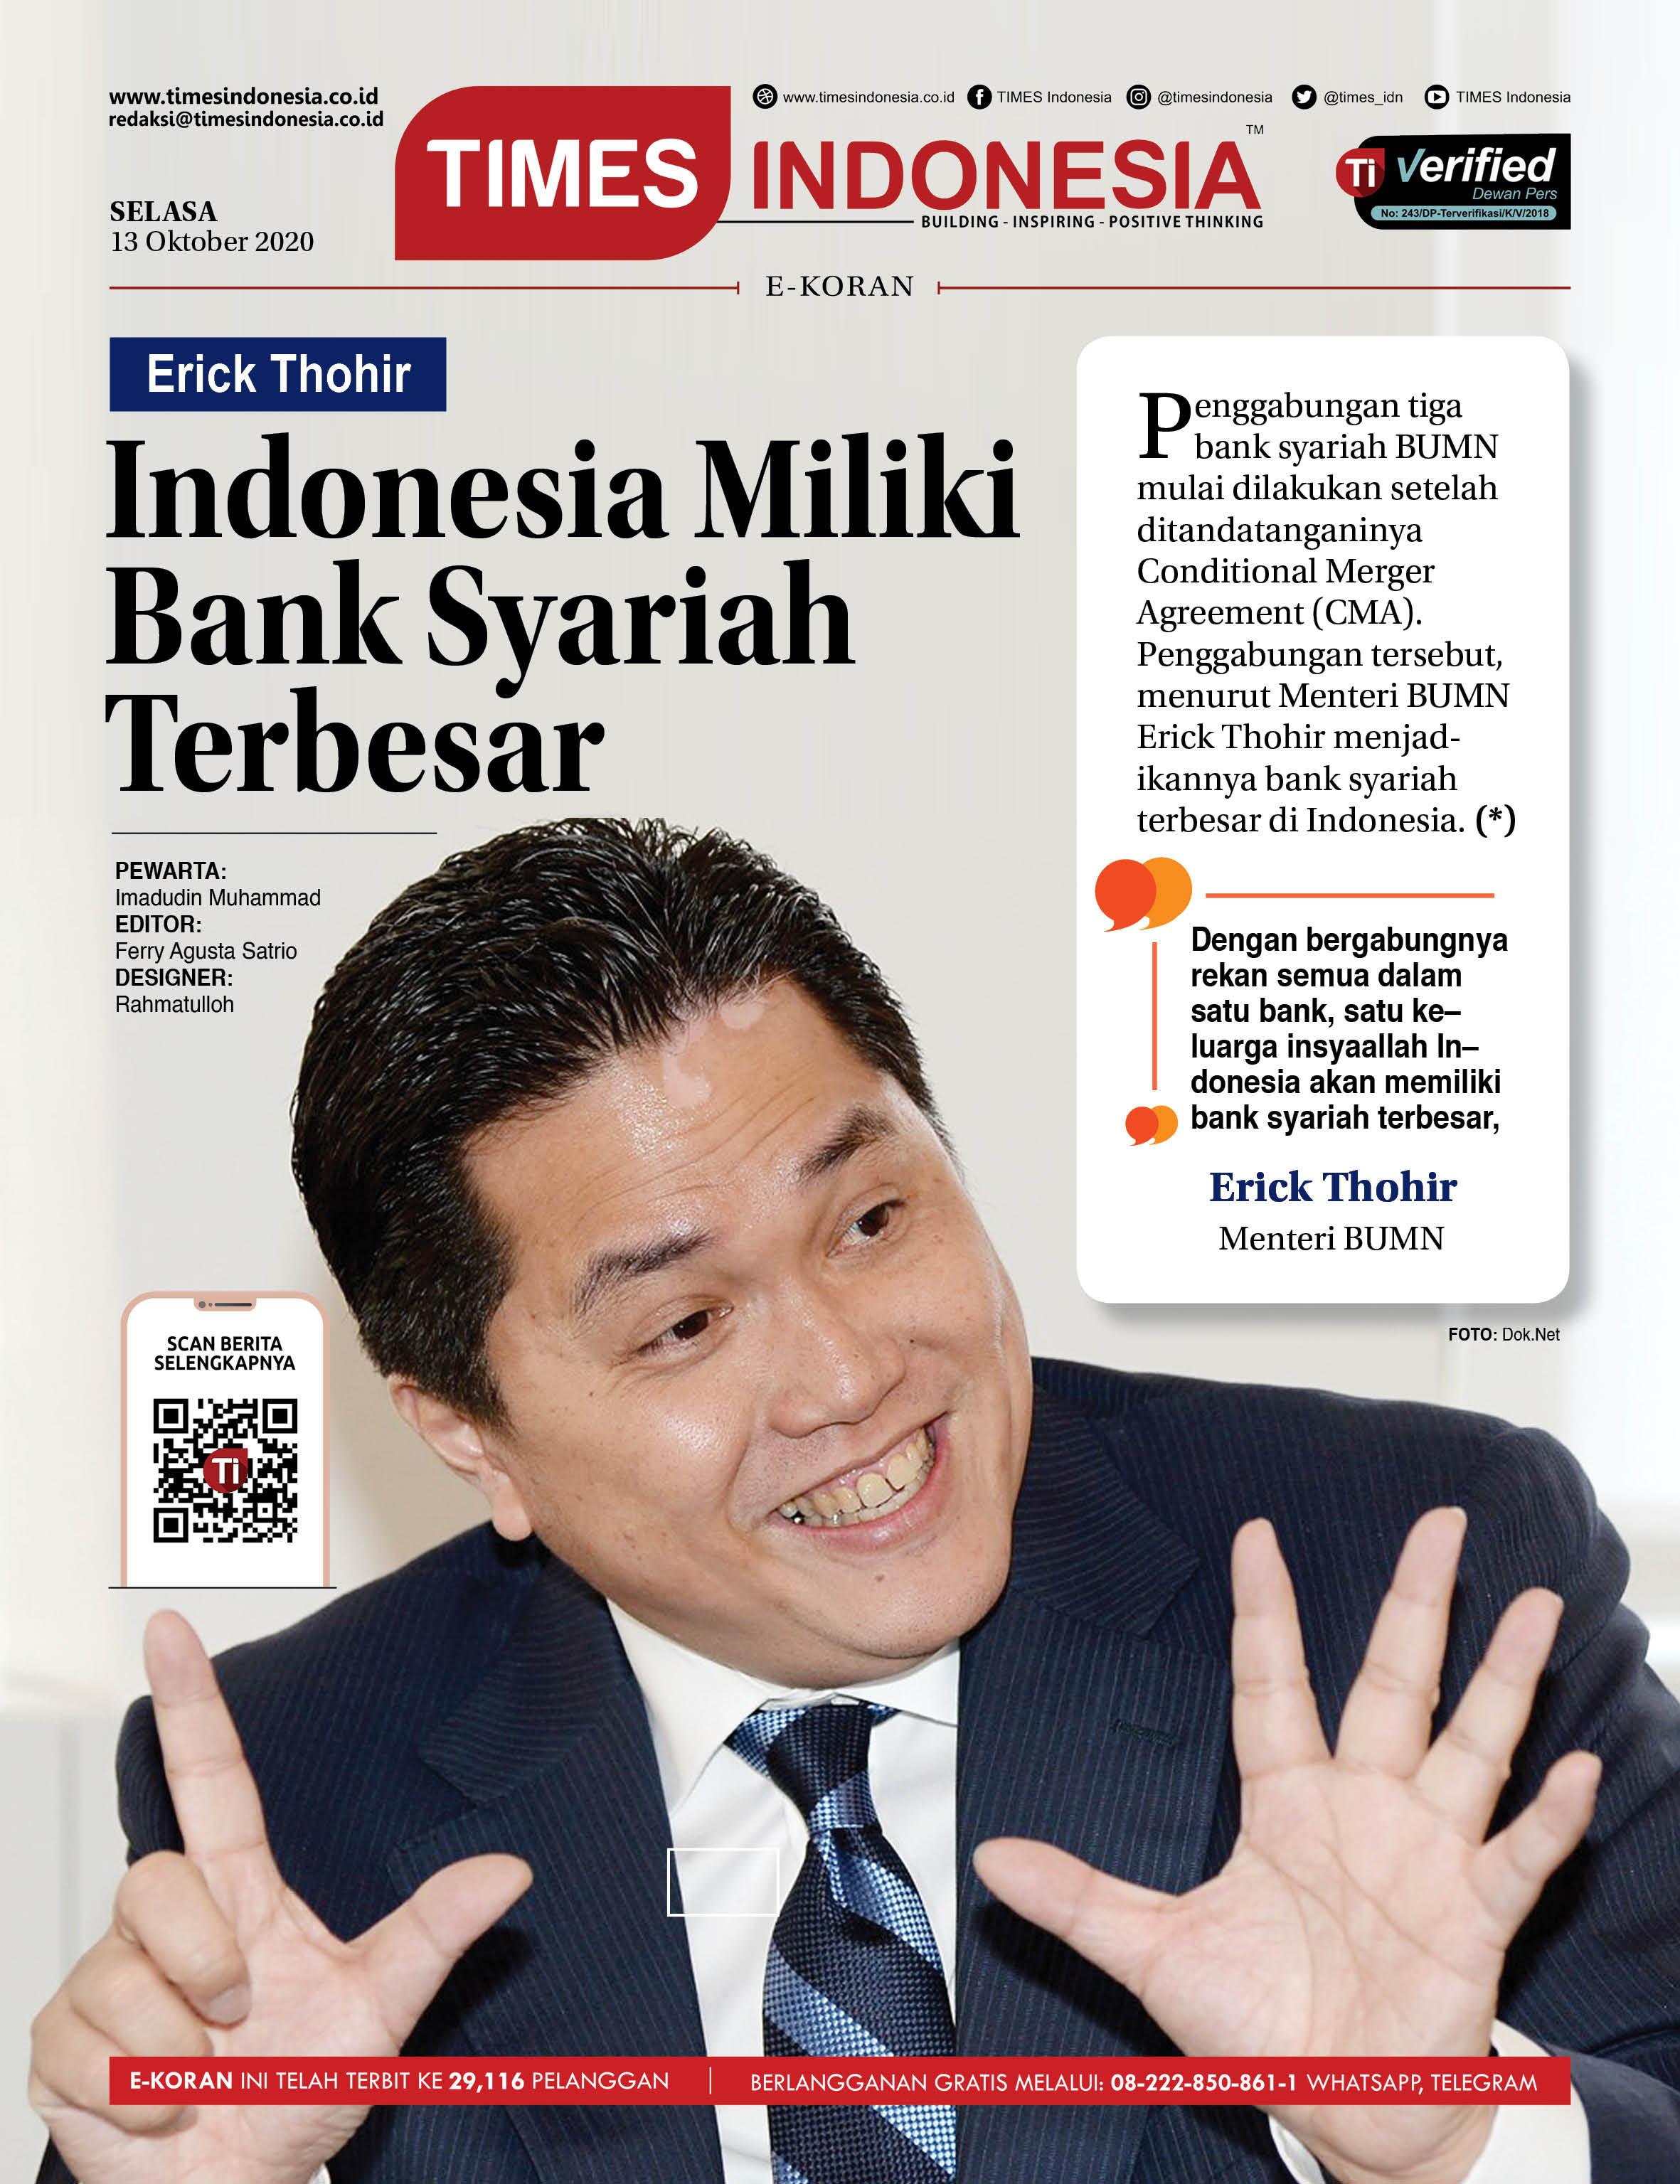 Ekoran-Edisi-Selasa-13-Oktoberr-2020-Erick-thihir-Indonesia-Miliki-Bank-Syariah-terbesar.jpg